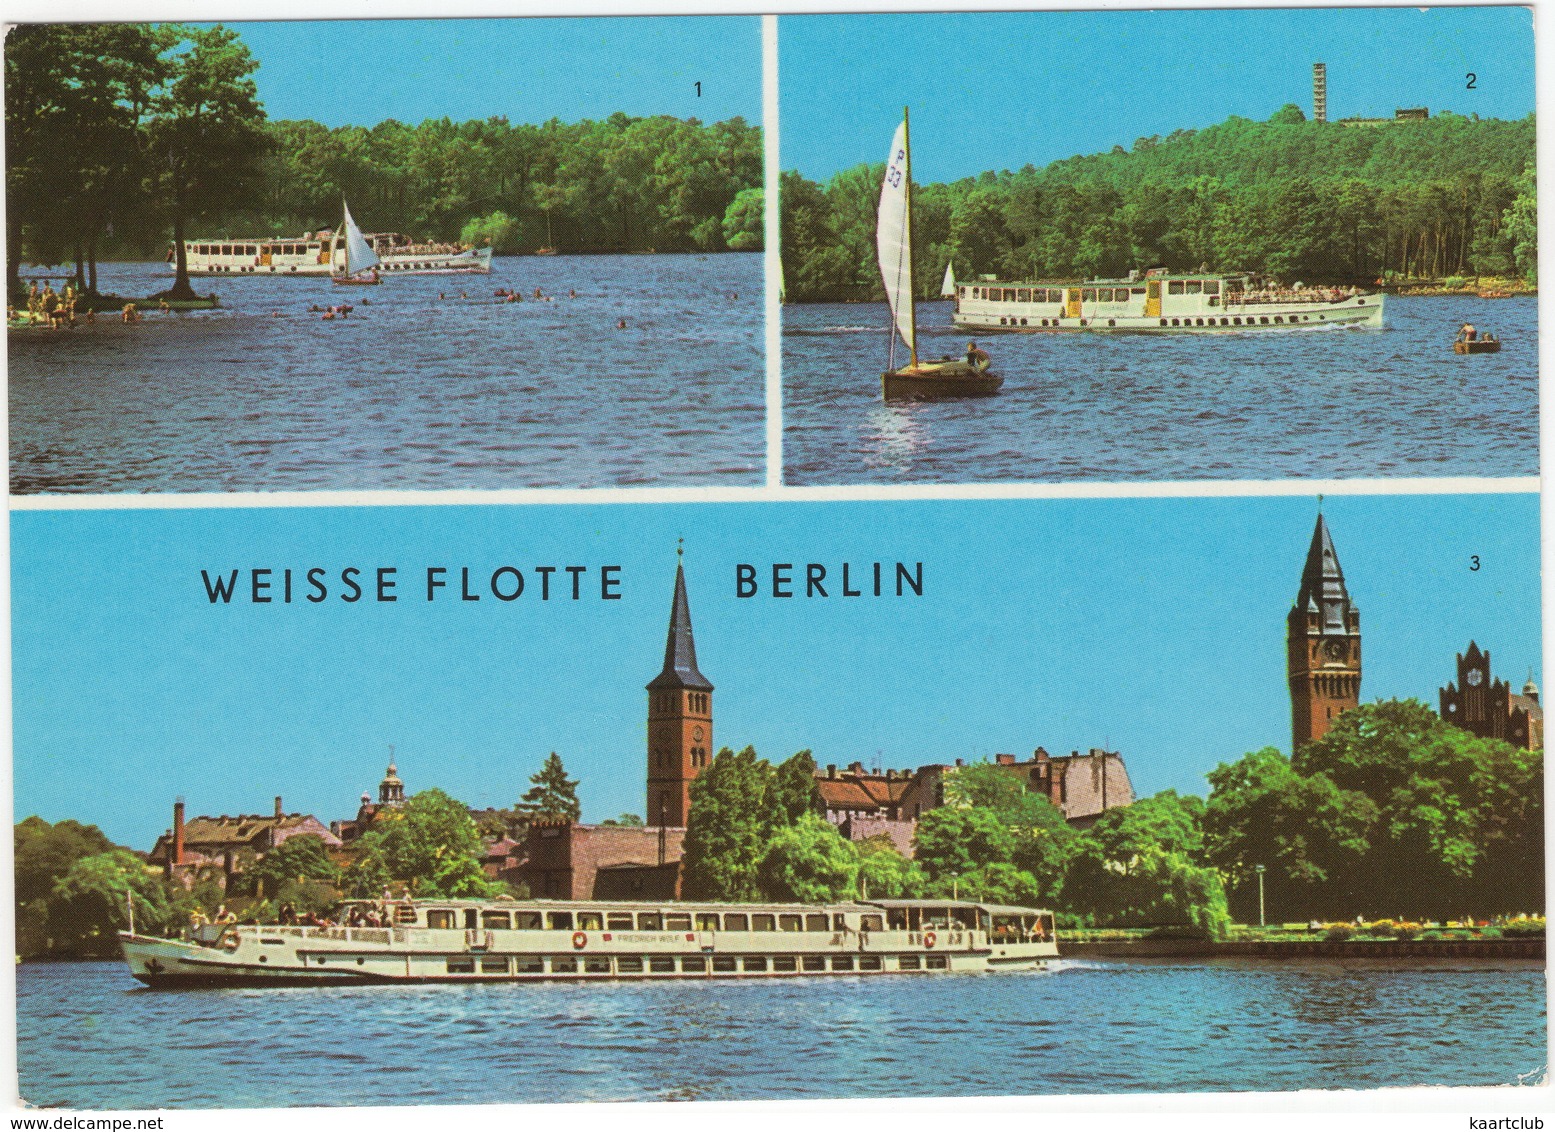 Weisse Flotte Berlin: Salonschiff Langen See, Müggelberge Mit Müggelturm, Luxusschiff Am Köpenicker Becken - (DDR) - Treptow